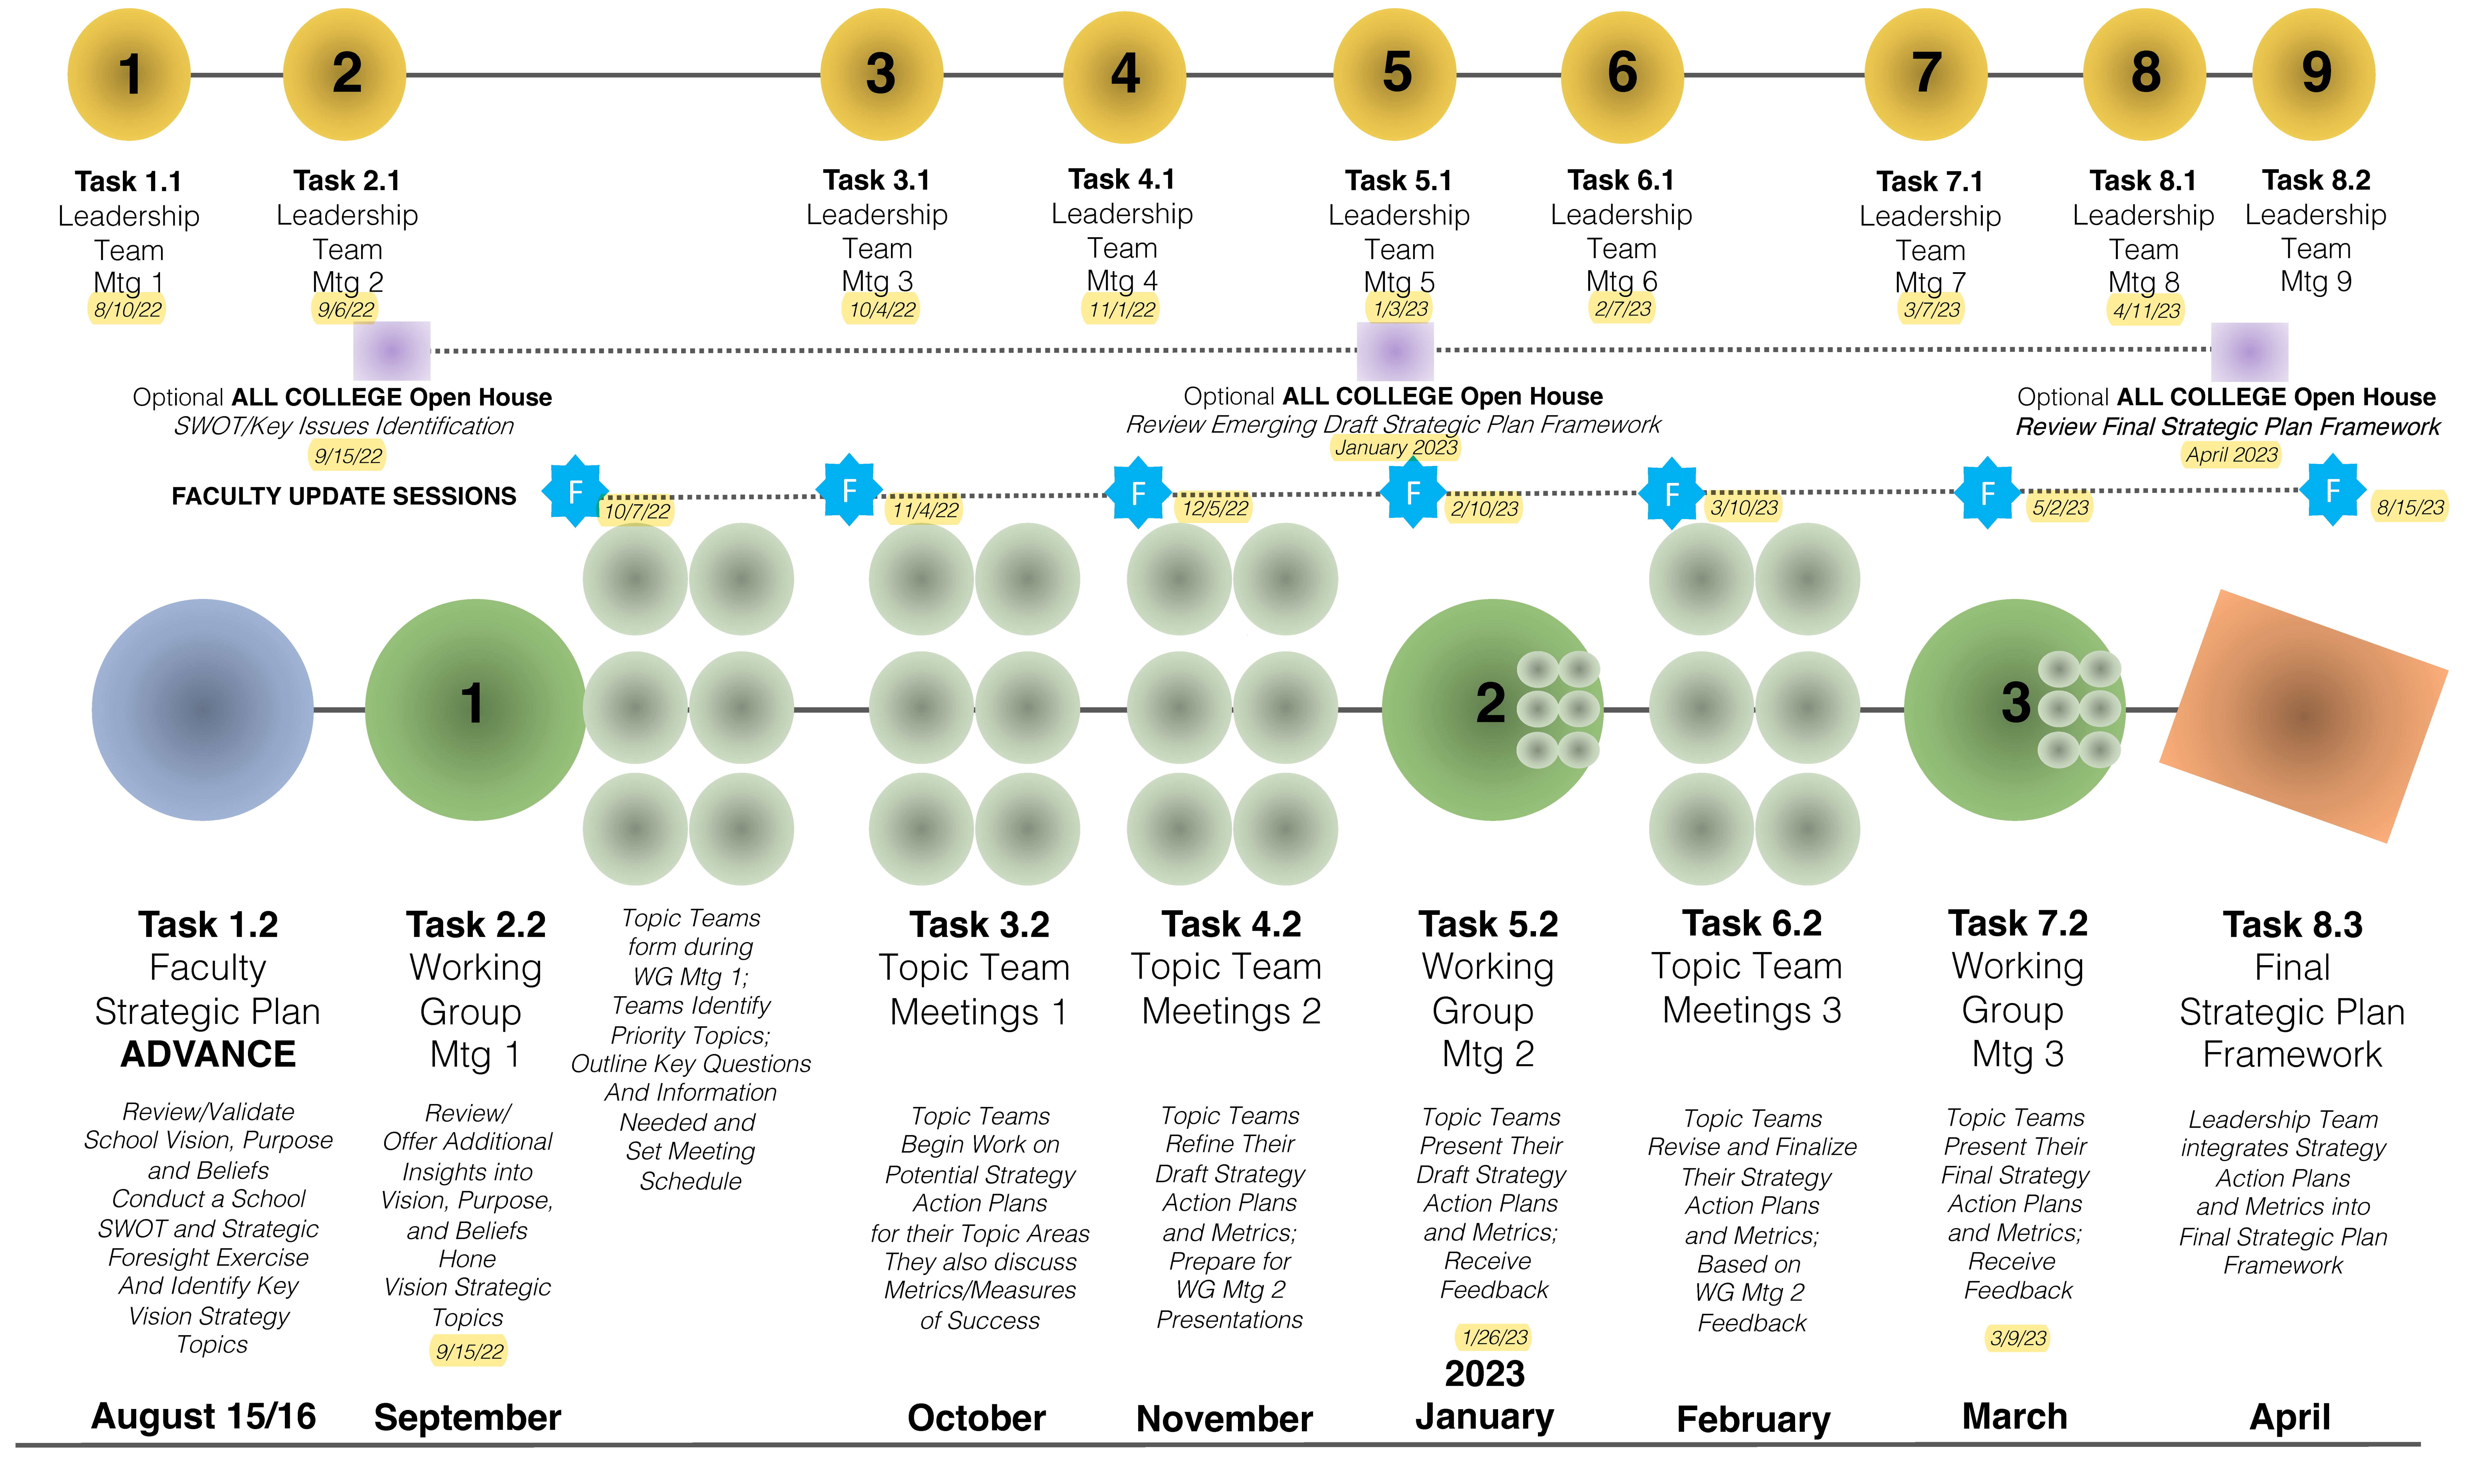 Strategic Plan Framework and Timeline